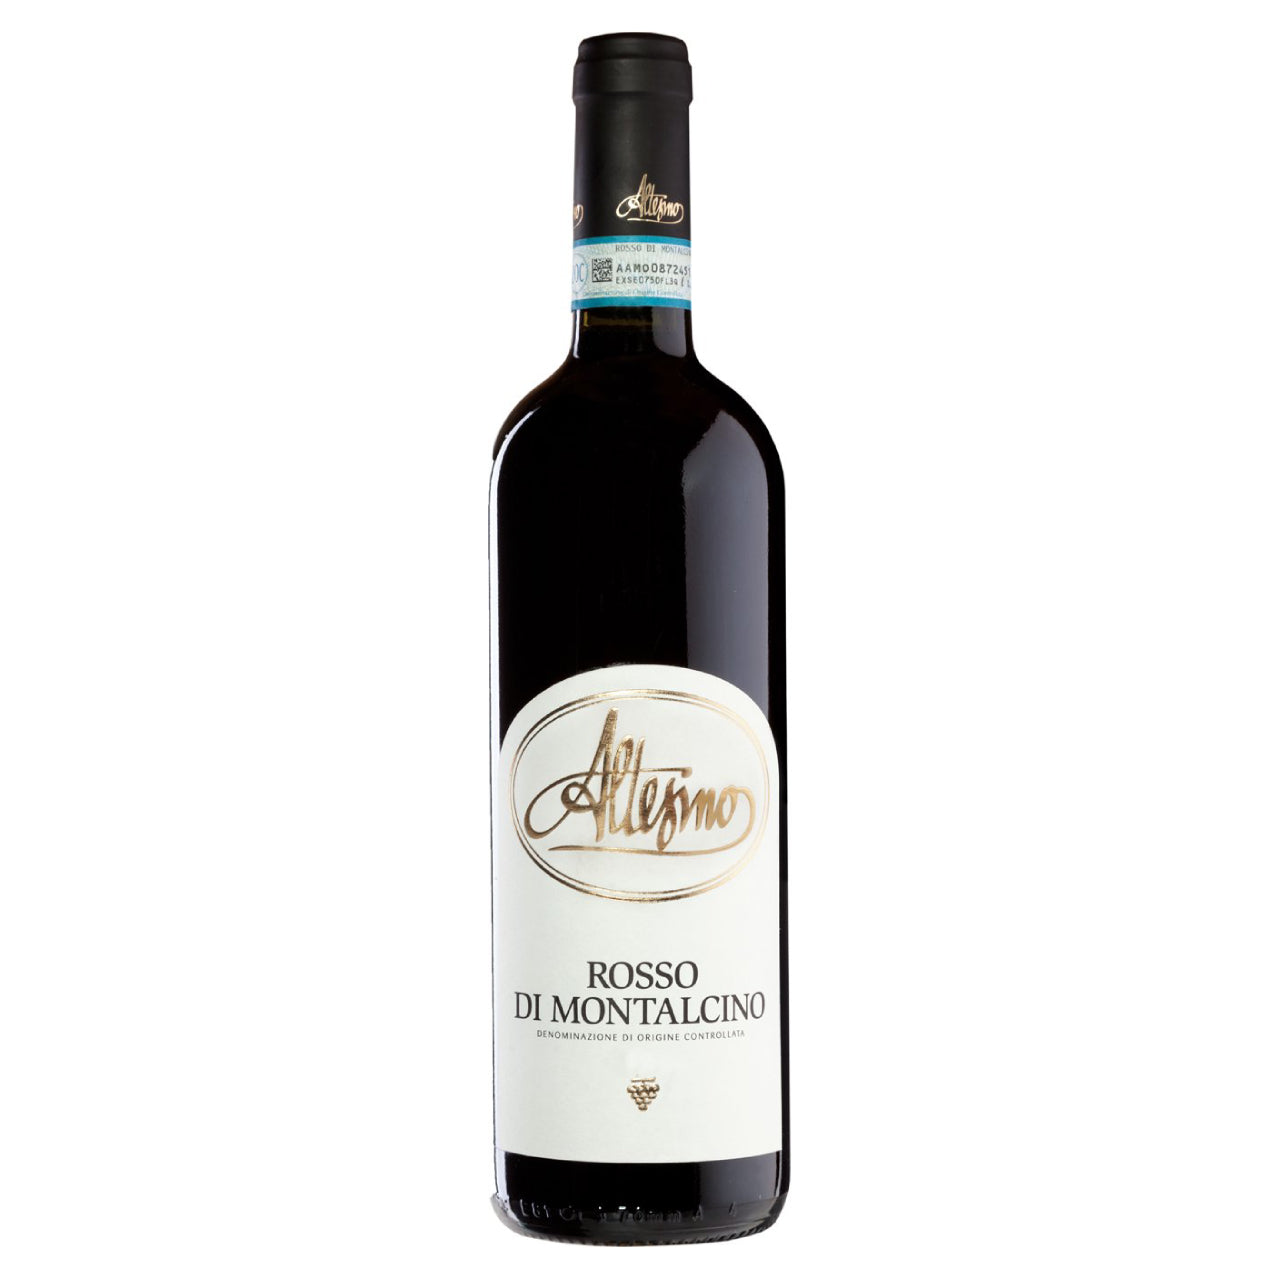 Altesino Rosso di Montalcino 2019 - Wine Italy Red - Liquor Wine Cave